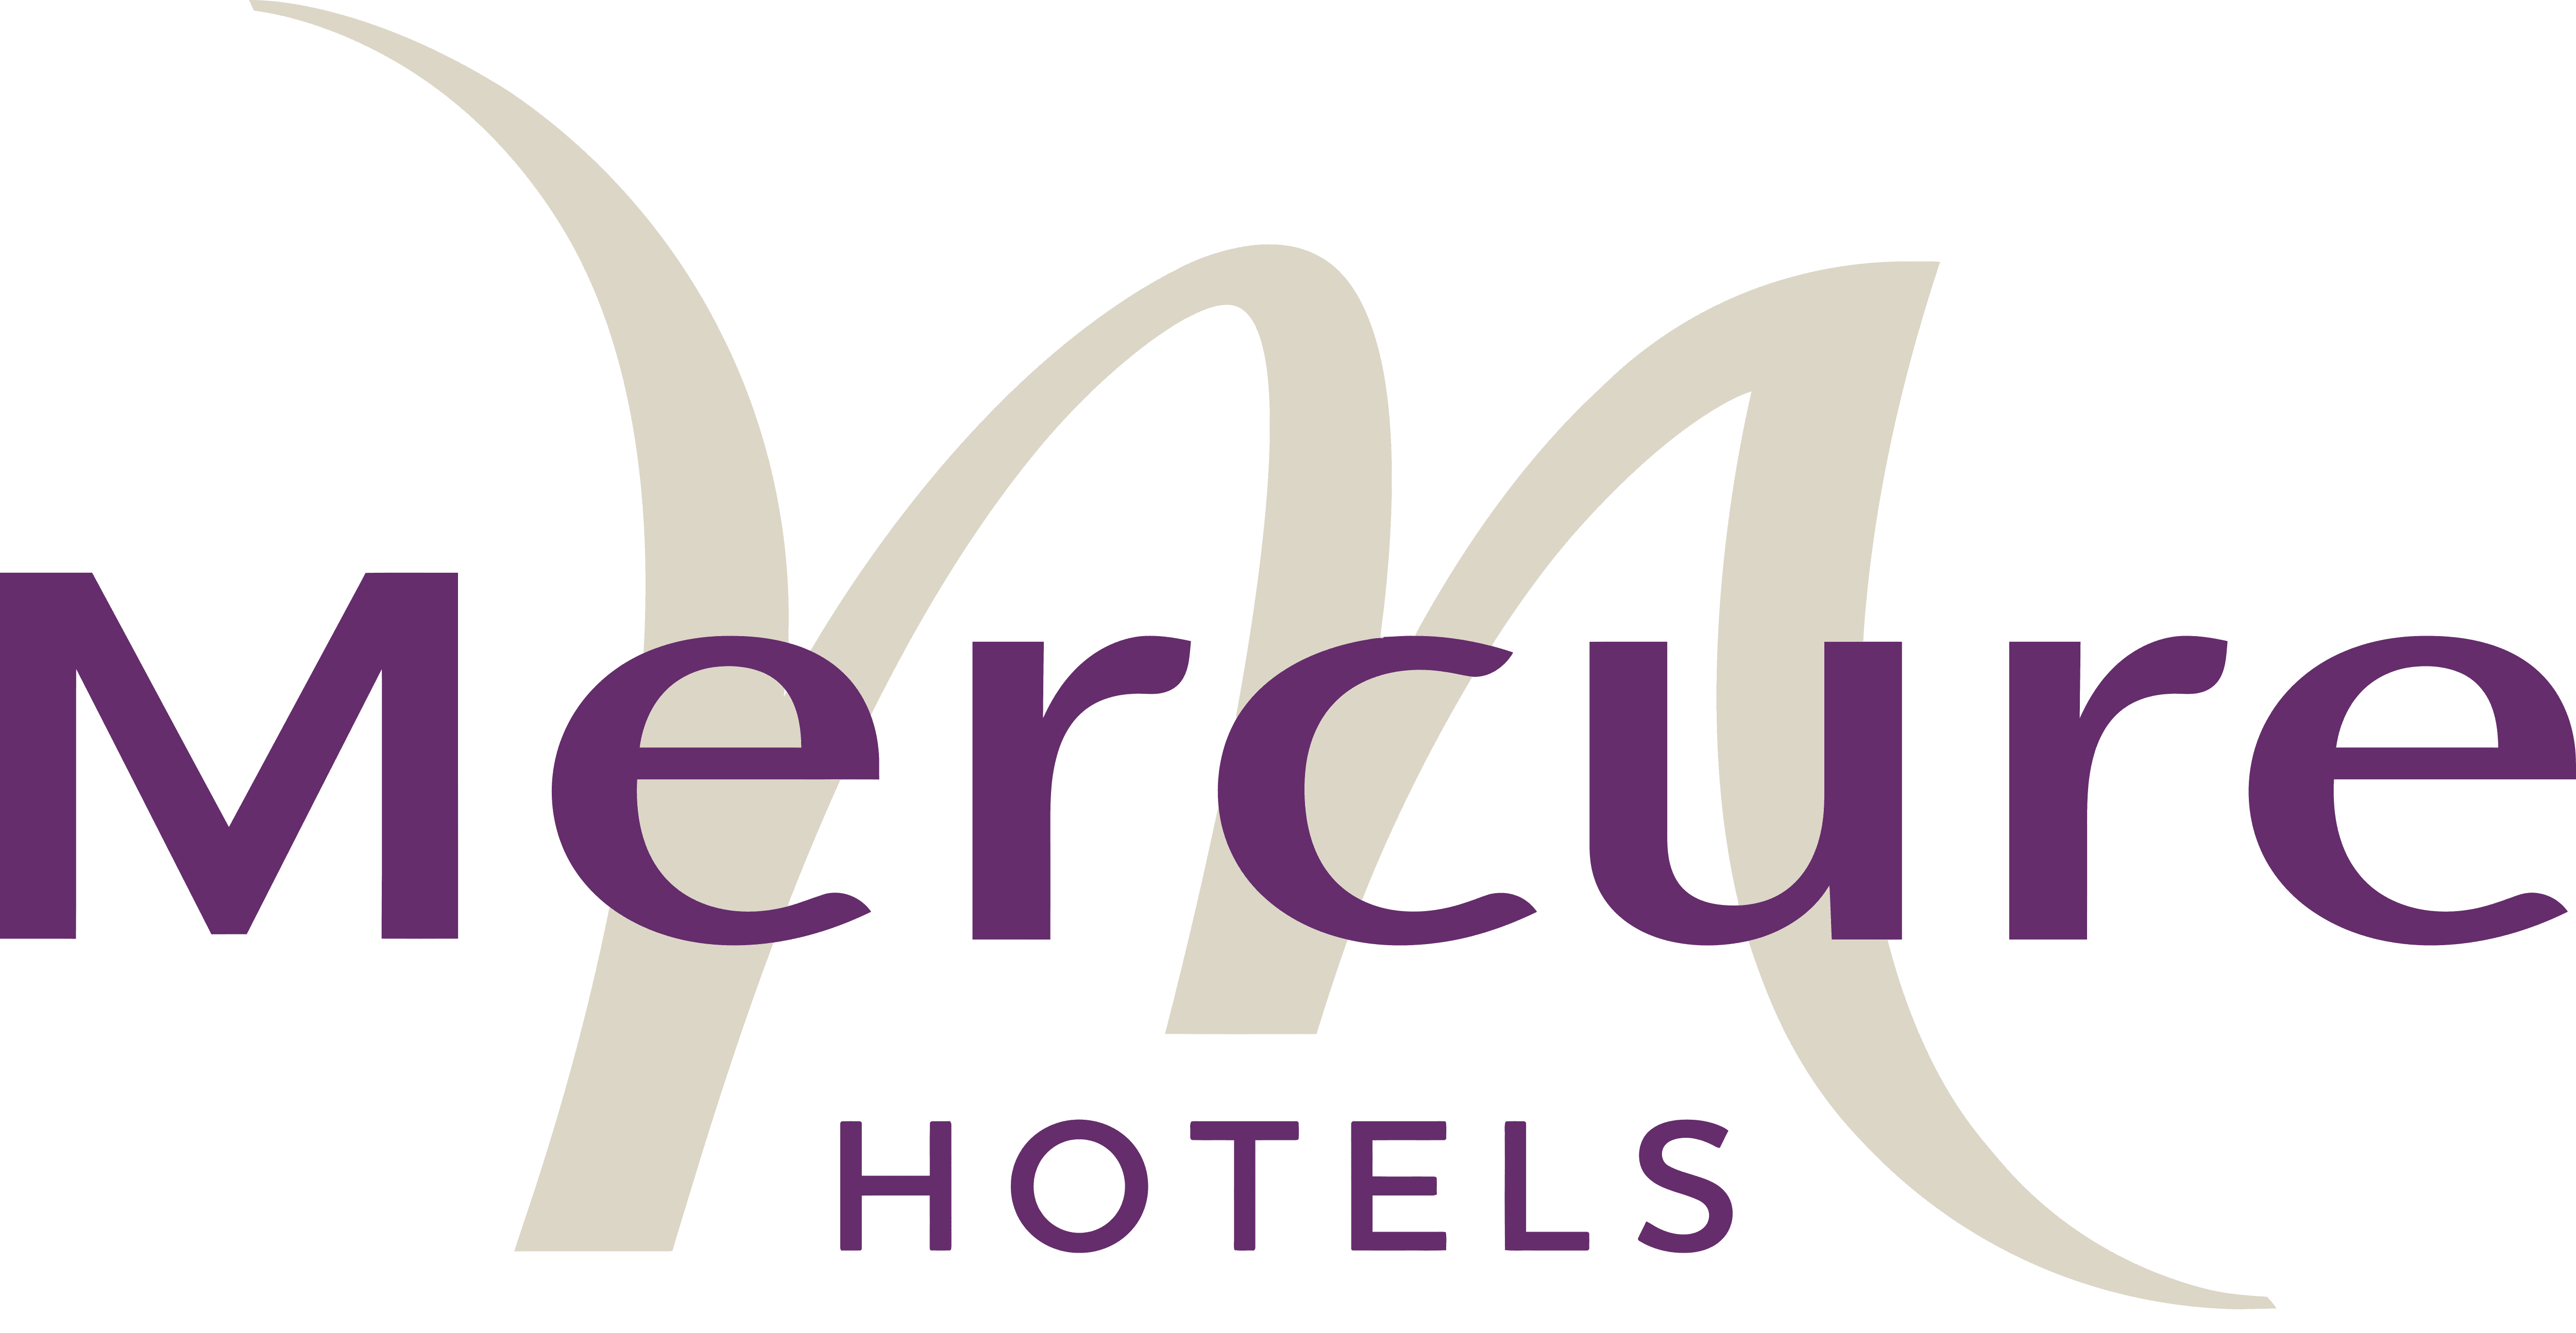 mercure hotels logo